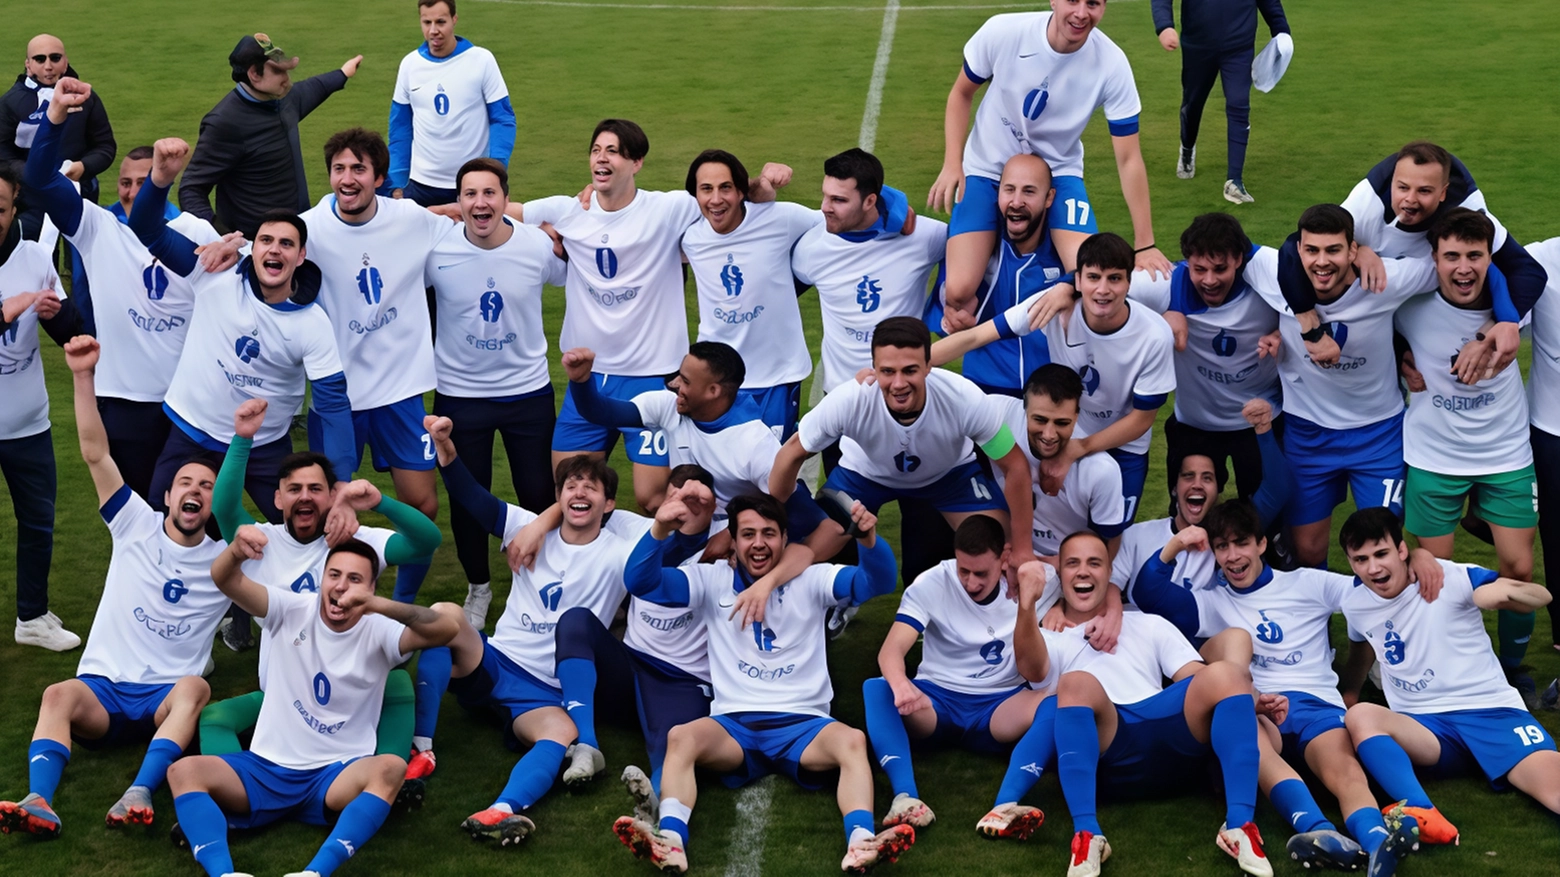 L'Affrico festeggia la promozione in Eccellenza con un trionfo storico, grazie al lavoro di squadra e alla guida dell'allenatore Luca Tognozzi. Un successo meritato dopo una stagione di impegno e sacrifici.